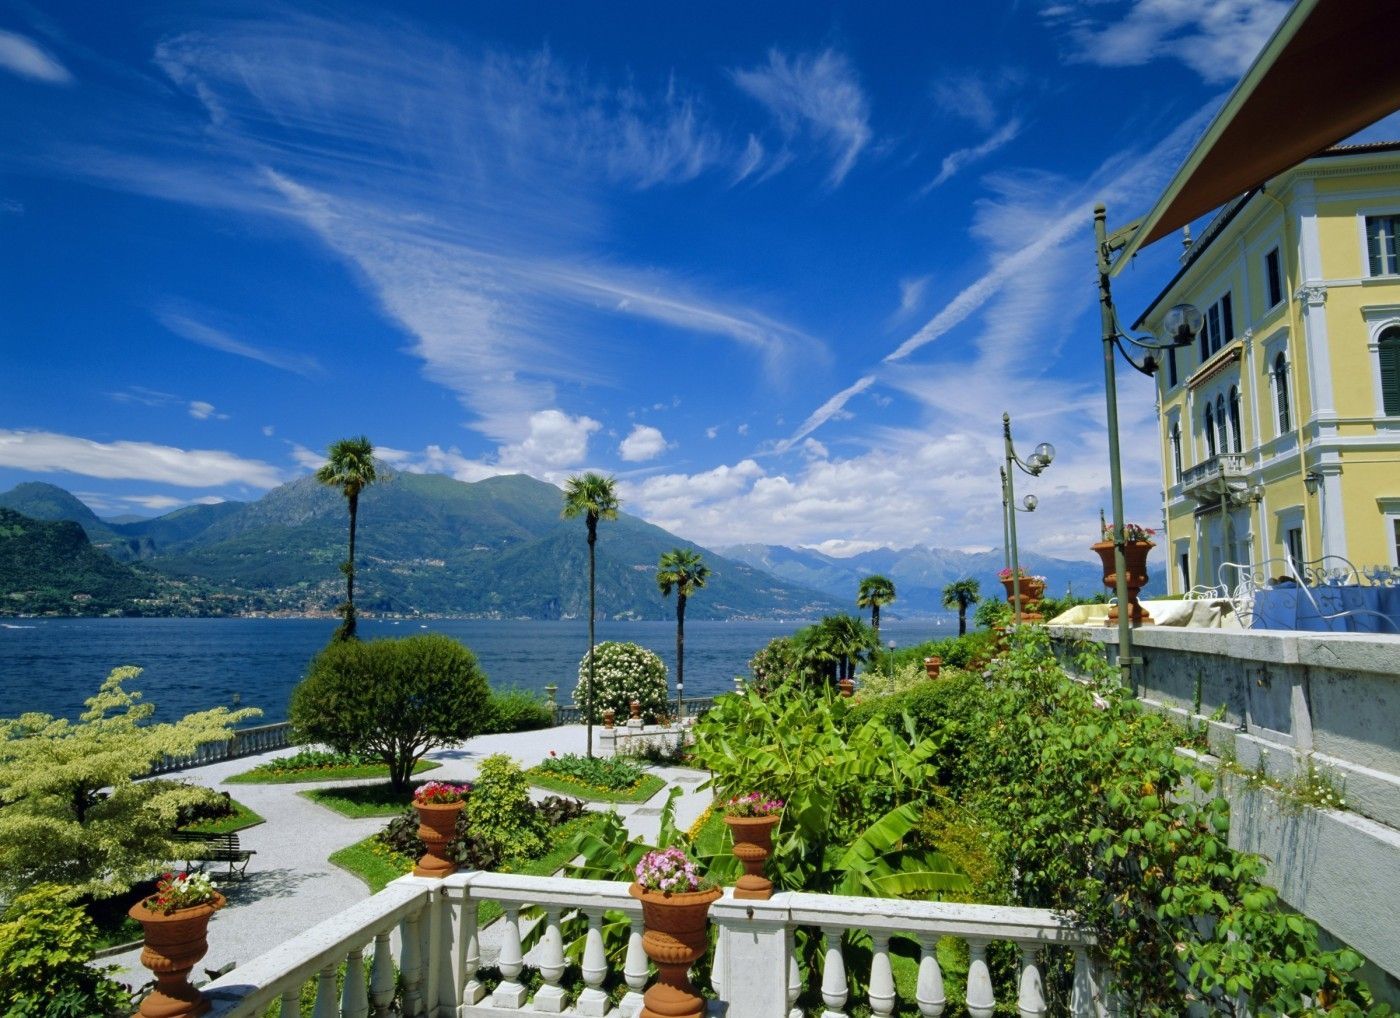 Oblíbená místa dovolené - jezero Como